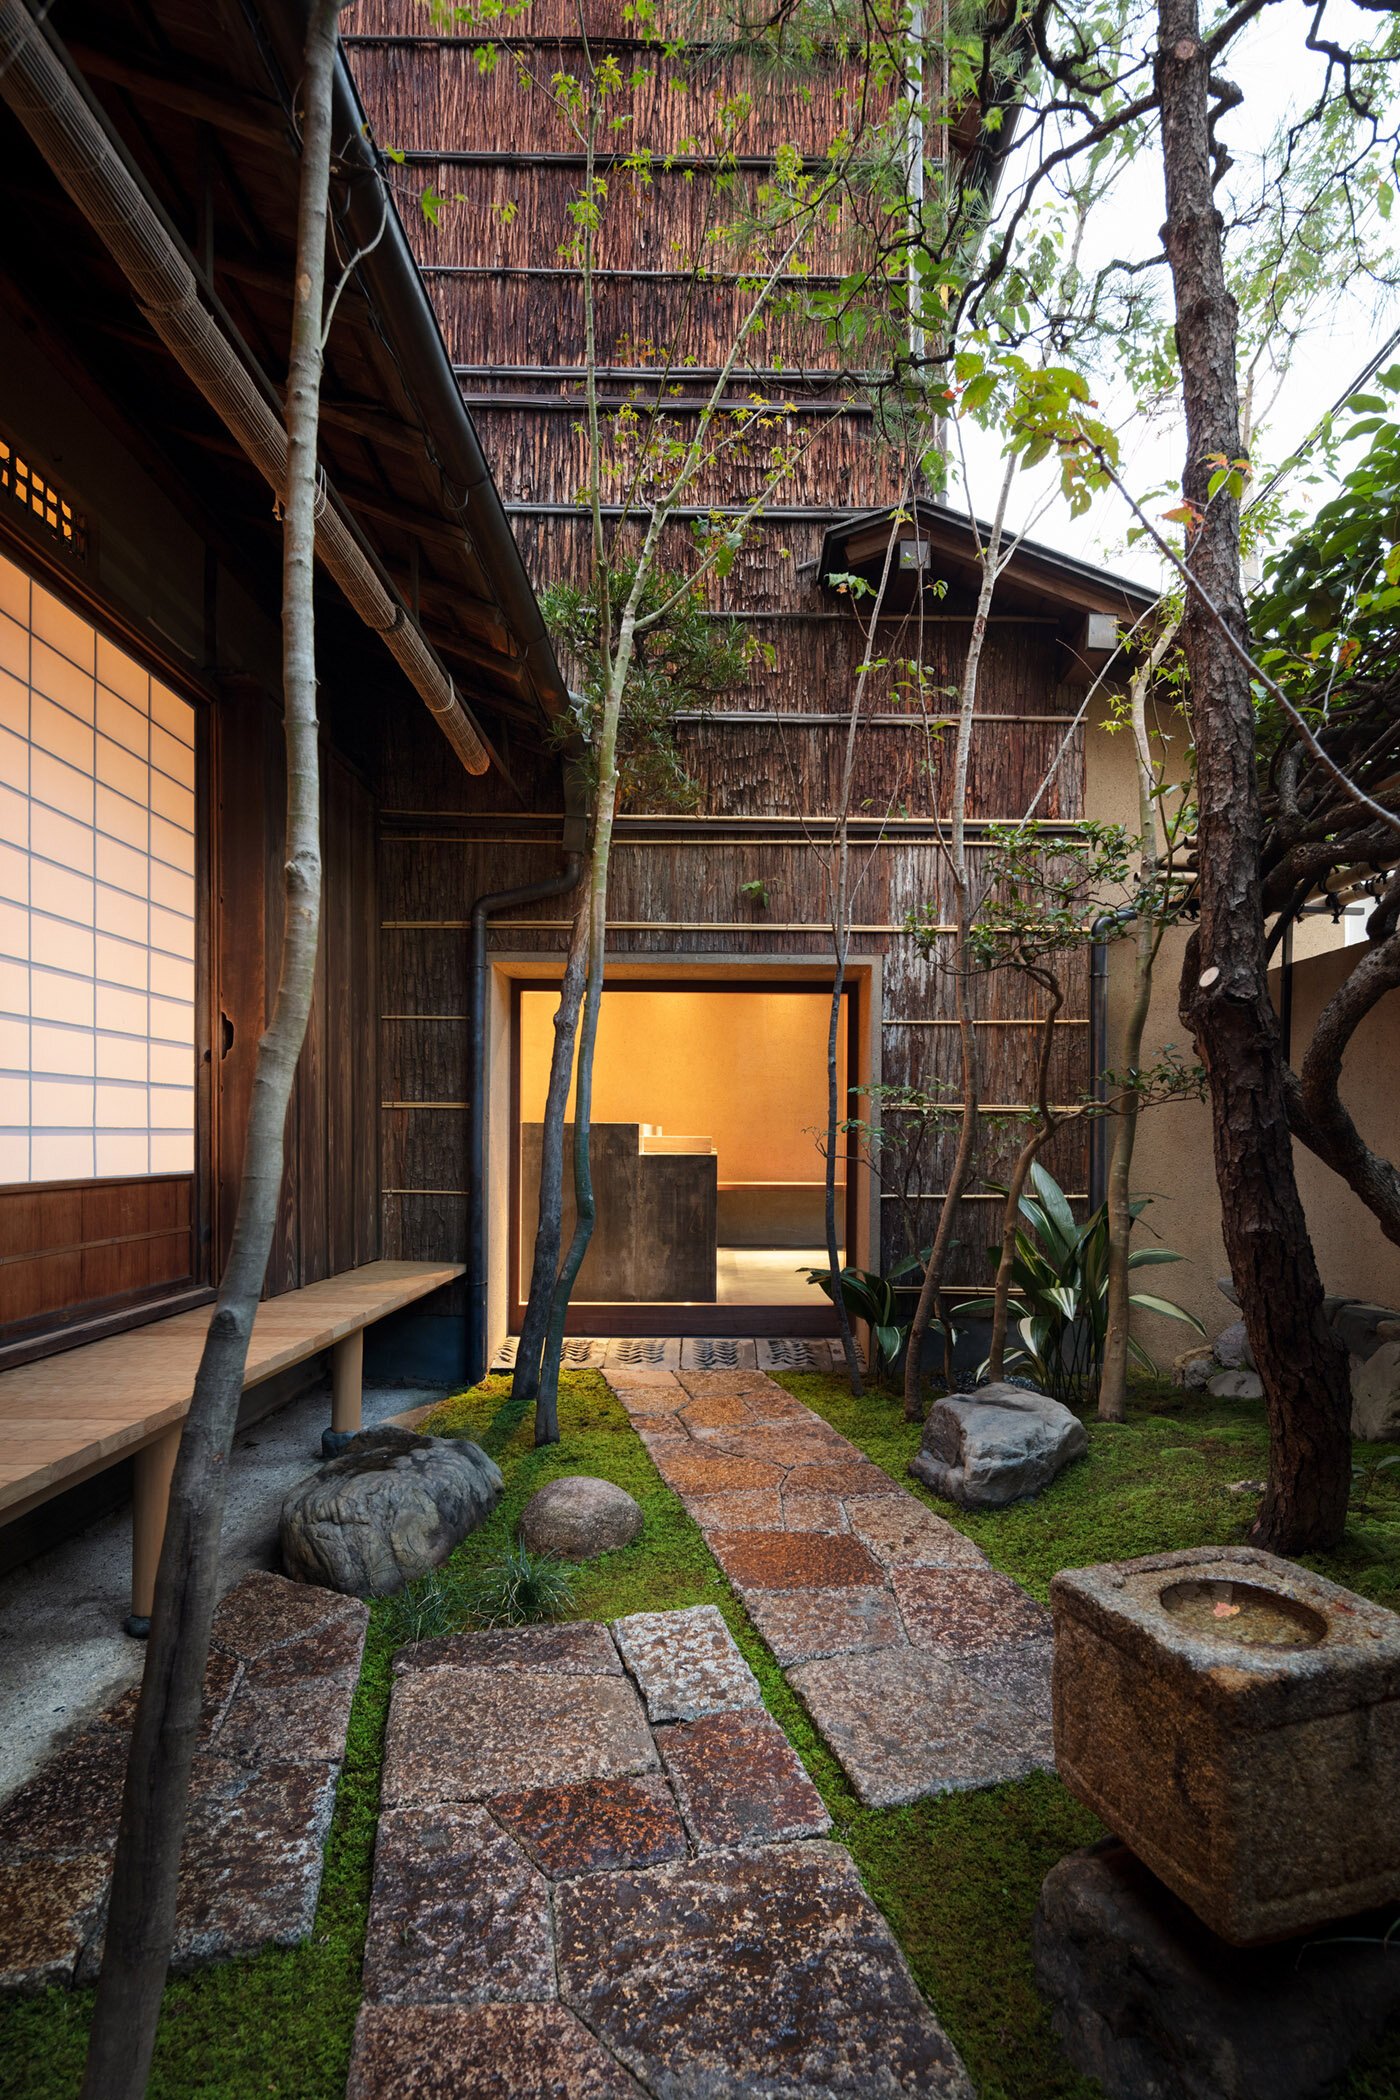  柳原照弘 Teruhiro Yanagihara Studioがインテリアデザインを手掛けた京都の尾張屋本店 菓子処の山草庭園 